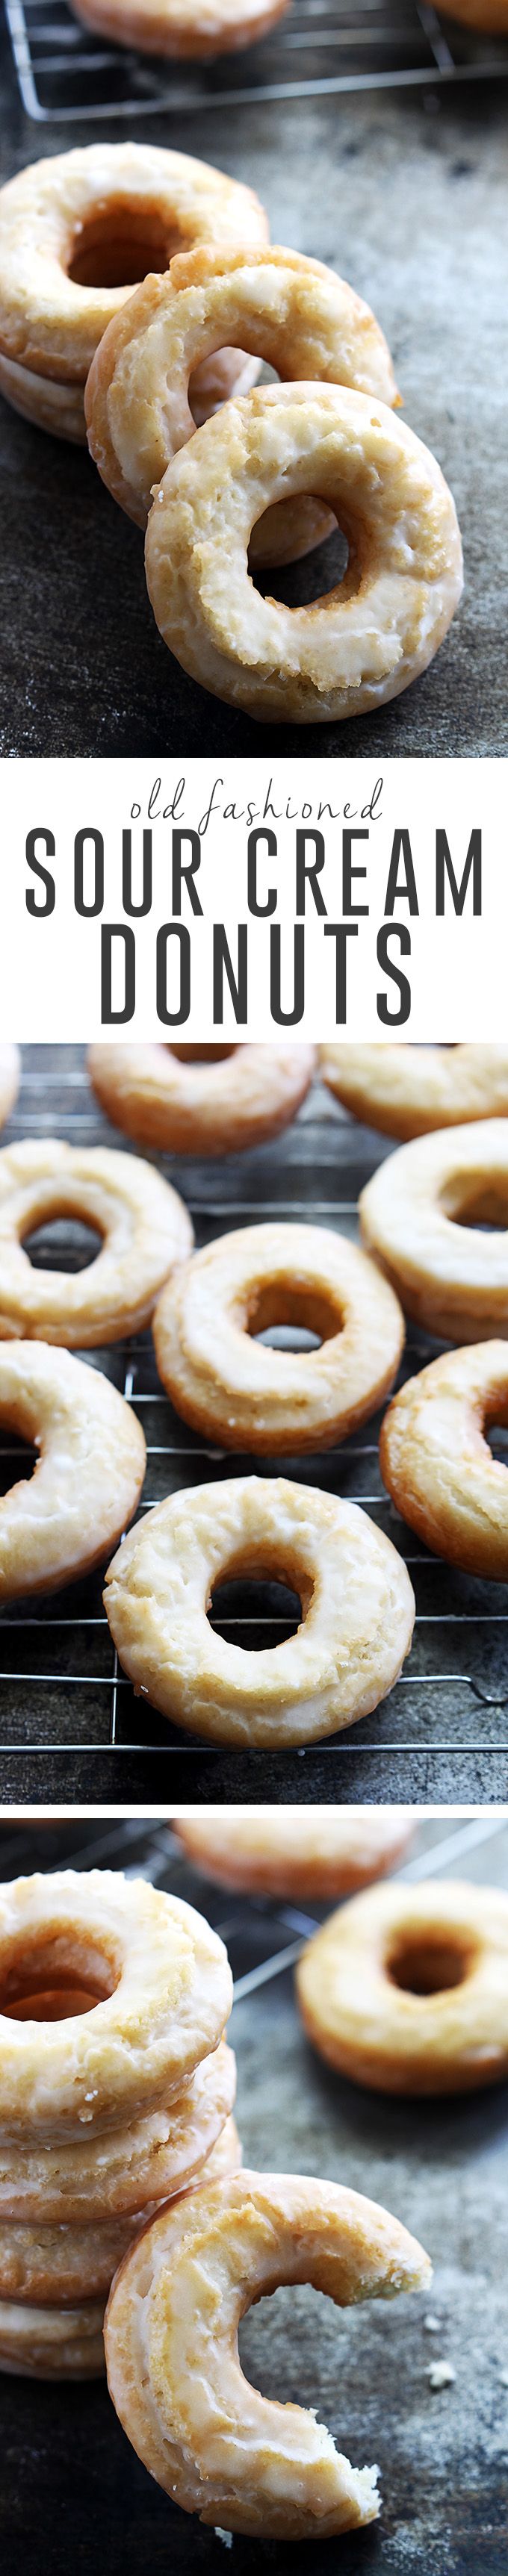 Homemade classic old fashioned sour cream donuts dipped in vanilla glaze. | Creme de la Crumb